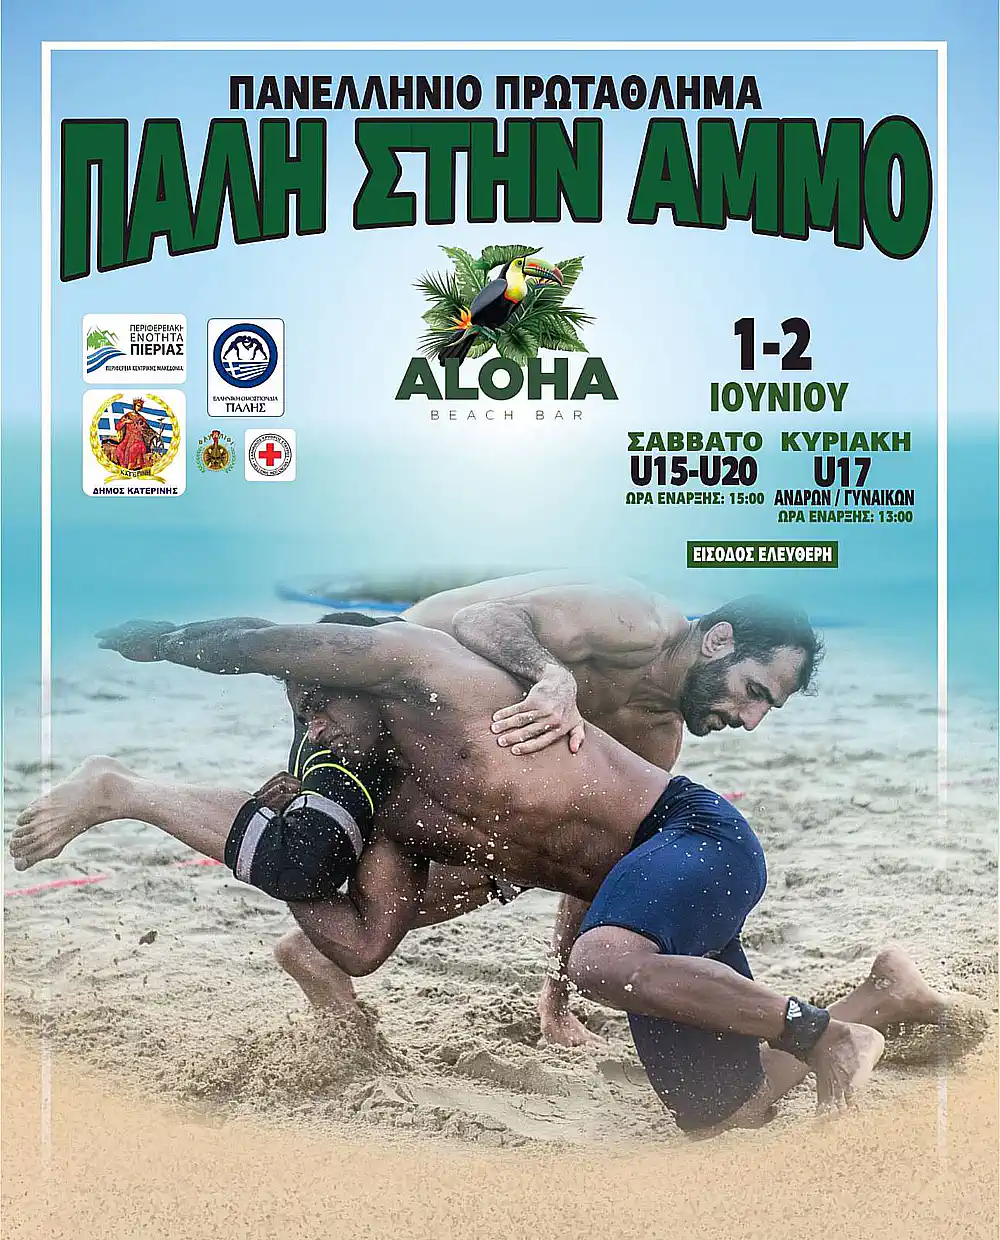 Στην Παραλία Κατερίνης το Πανελλήνιο Πρωτάθλημα Πάλης στην Άμμο